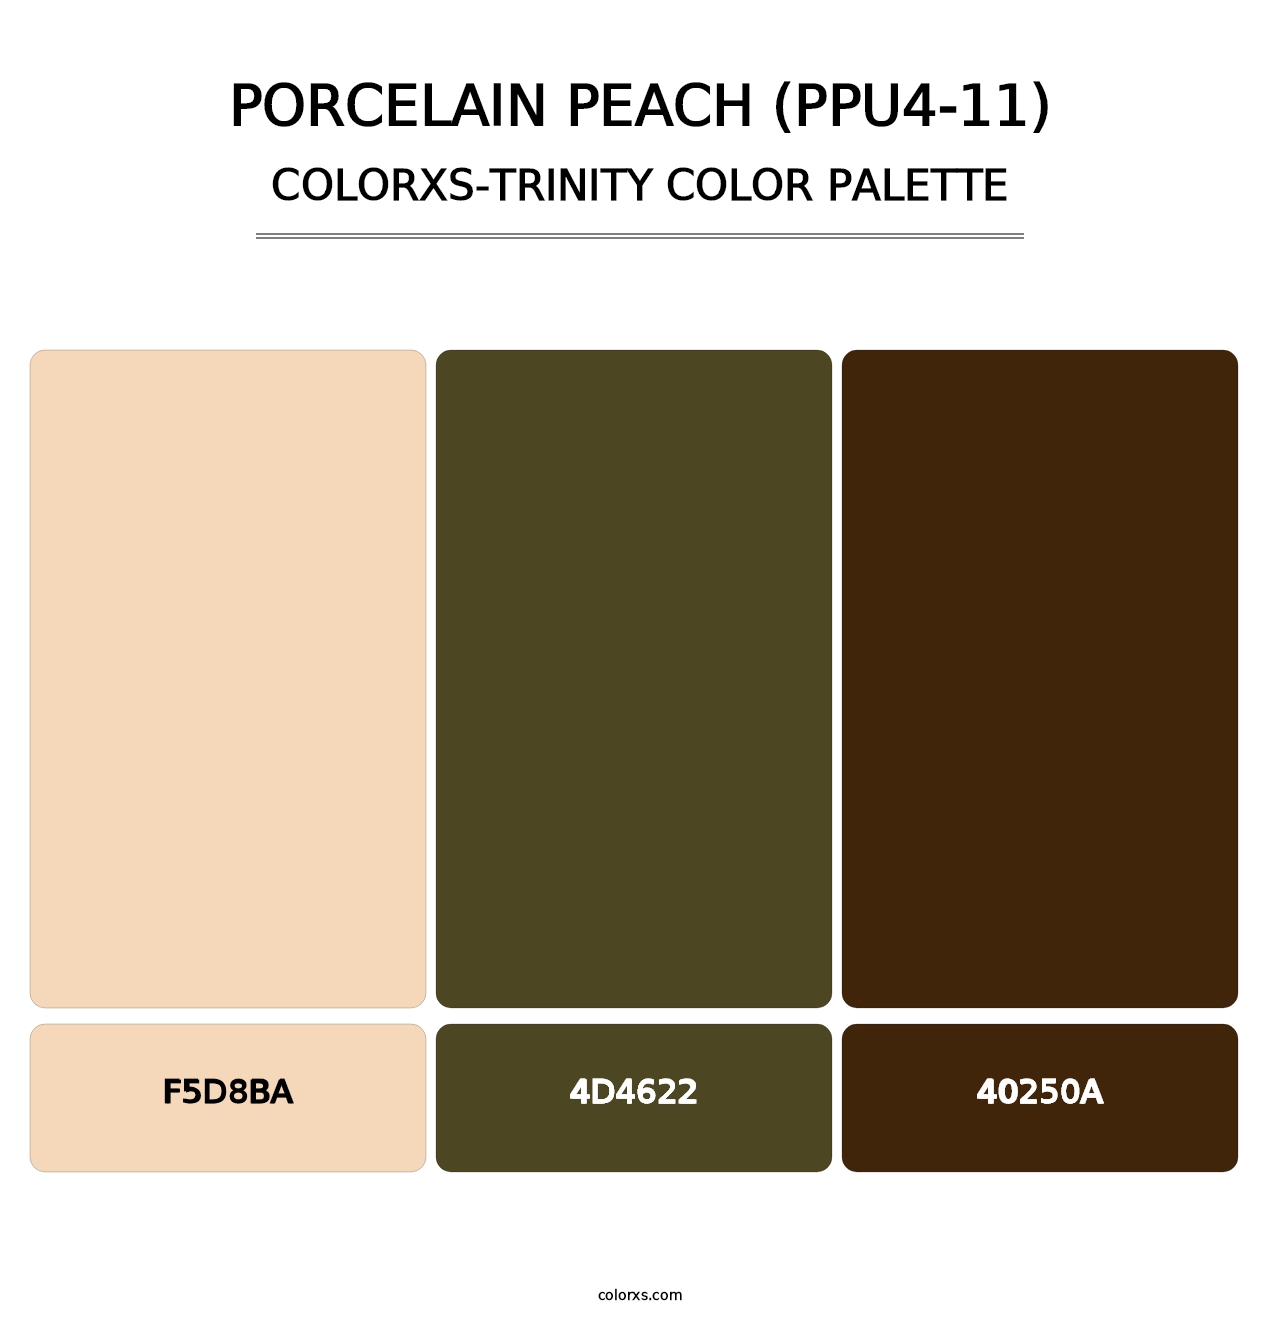 Porcelain Peach (PPU4-11) - Colorxs Trinity Palette